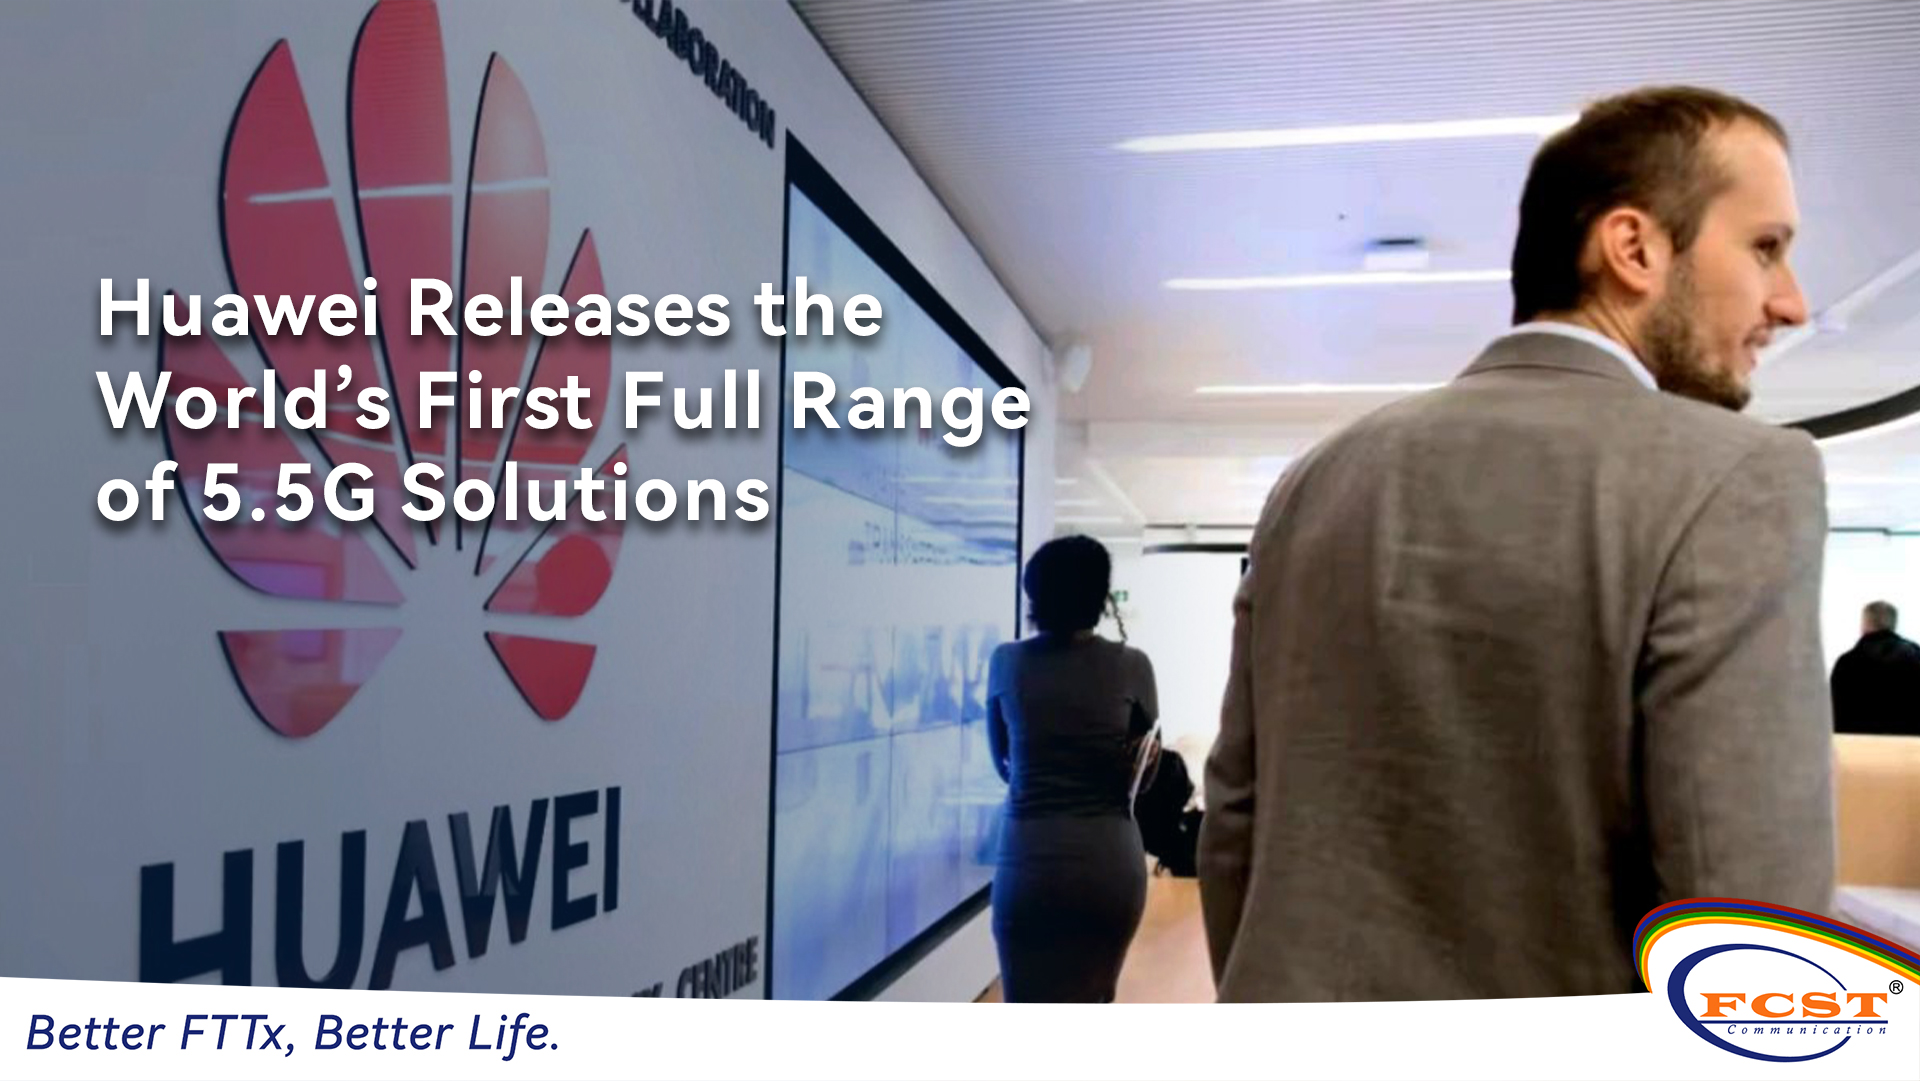 A Huawei lança a primeira gama completa do mundo de soluções 5.5g